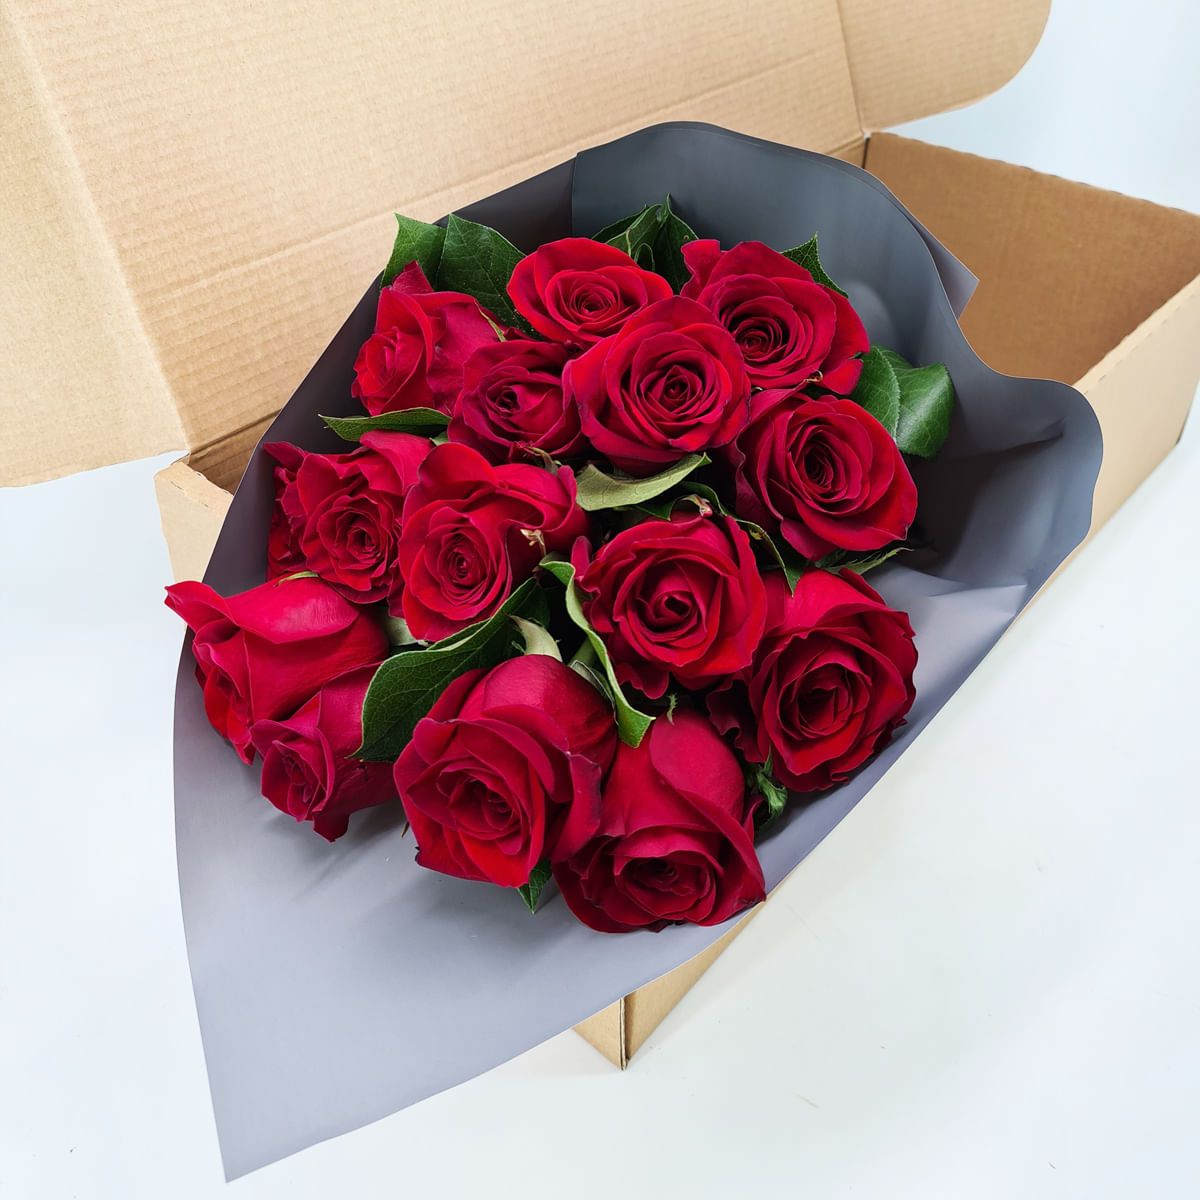 Buchet de 15 trandafiri rosii in cutie floria.ro